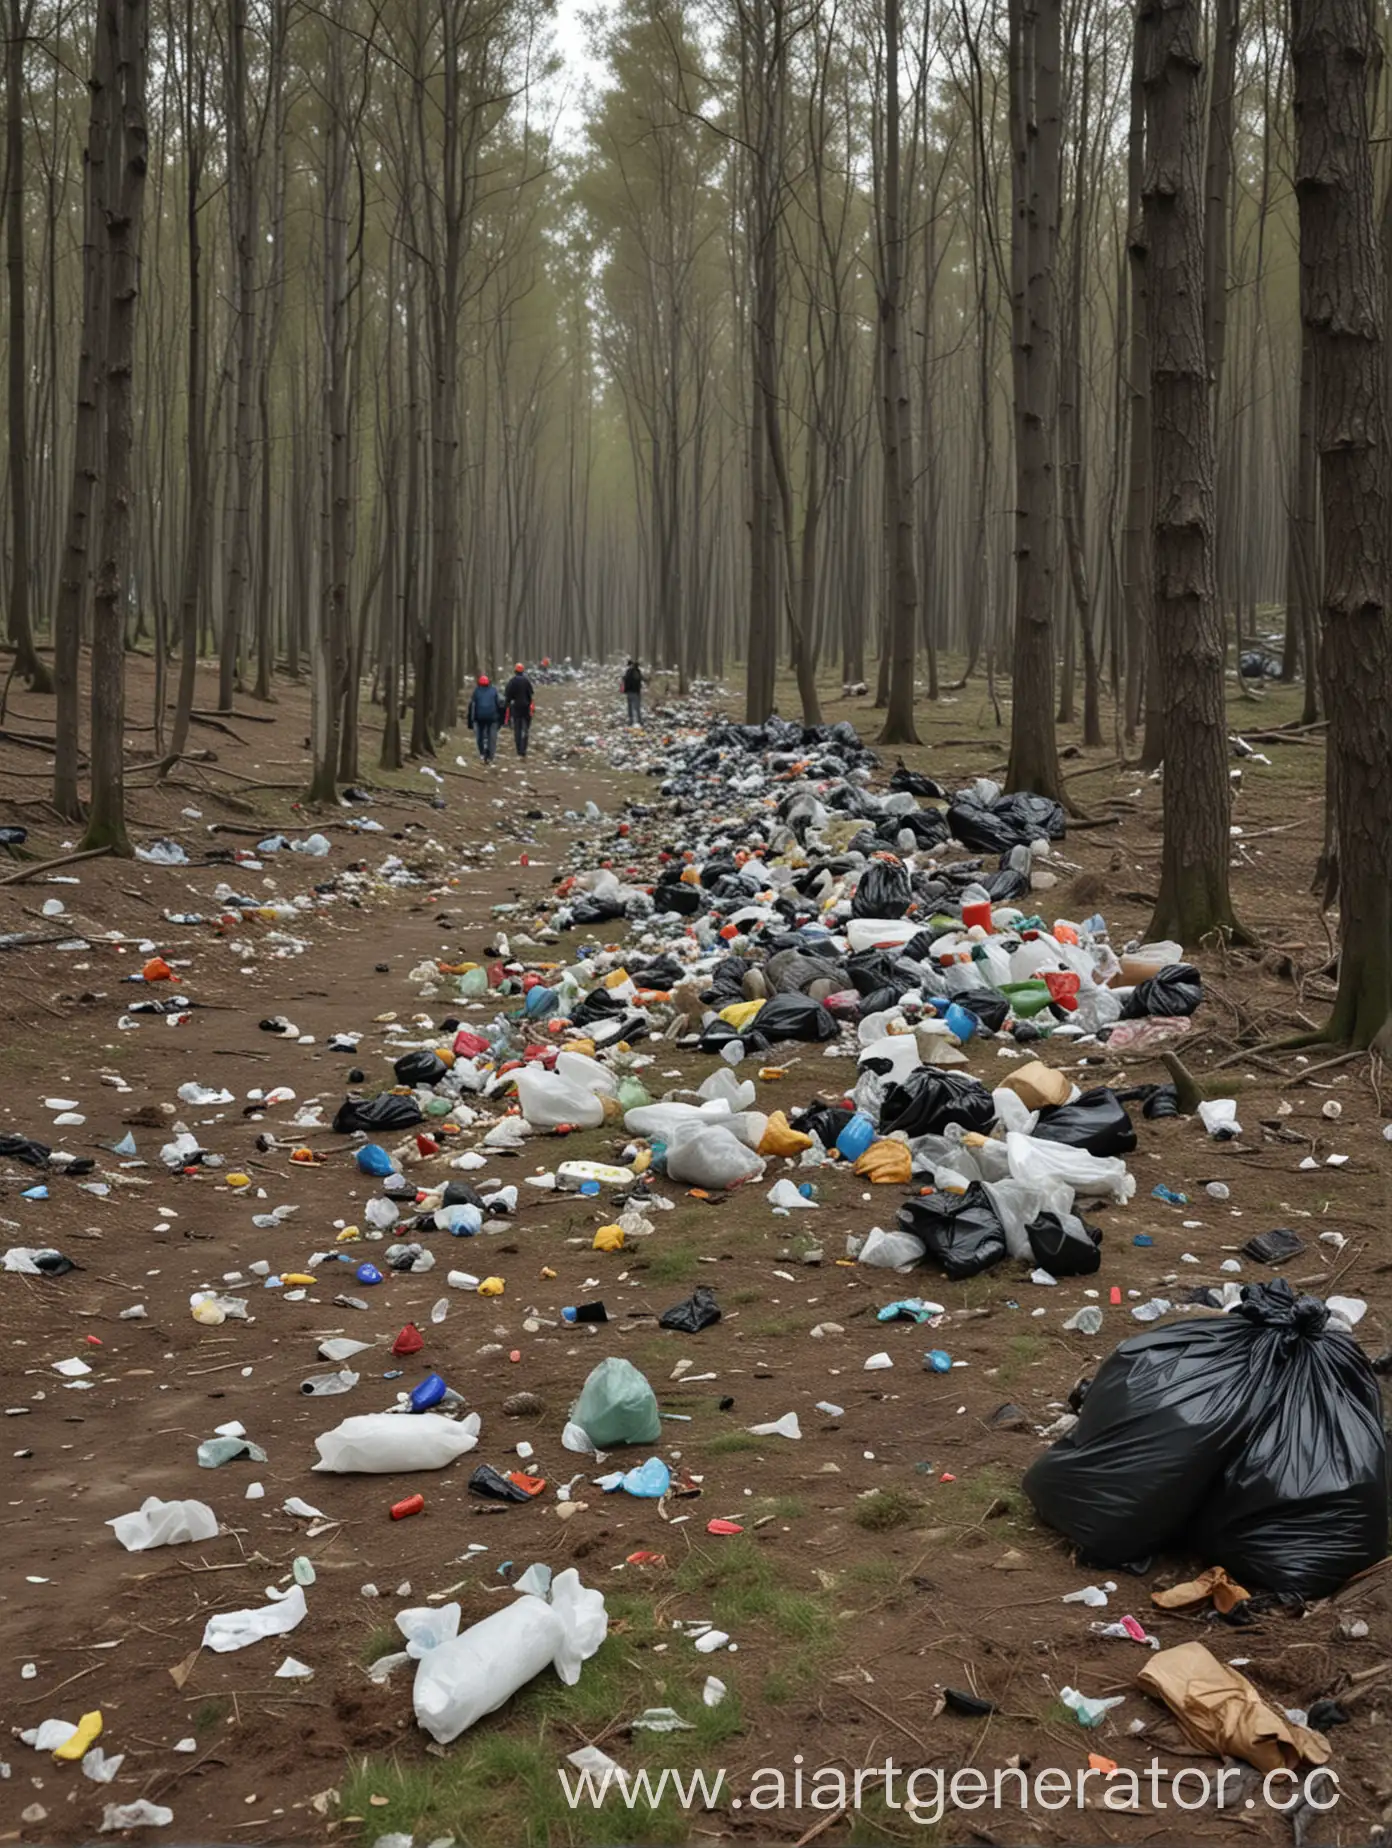 Люди убираются в лесу, нагинаются к мусору. Мусор, бутылки, куча мусора в дали, деревья. 4к качество